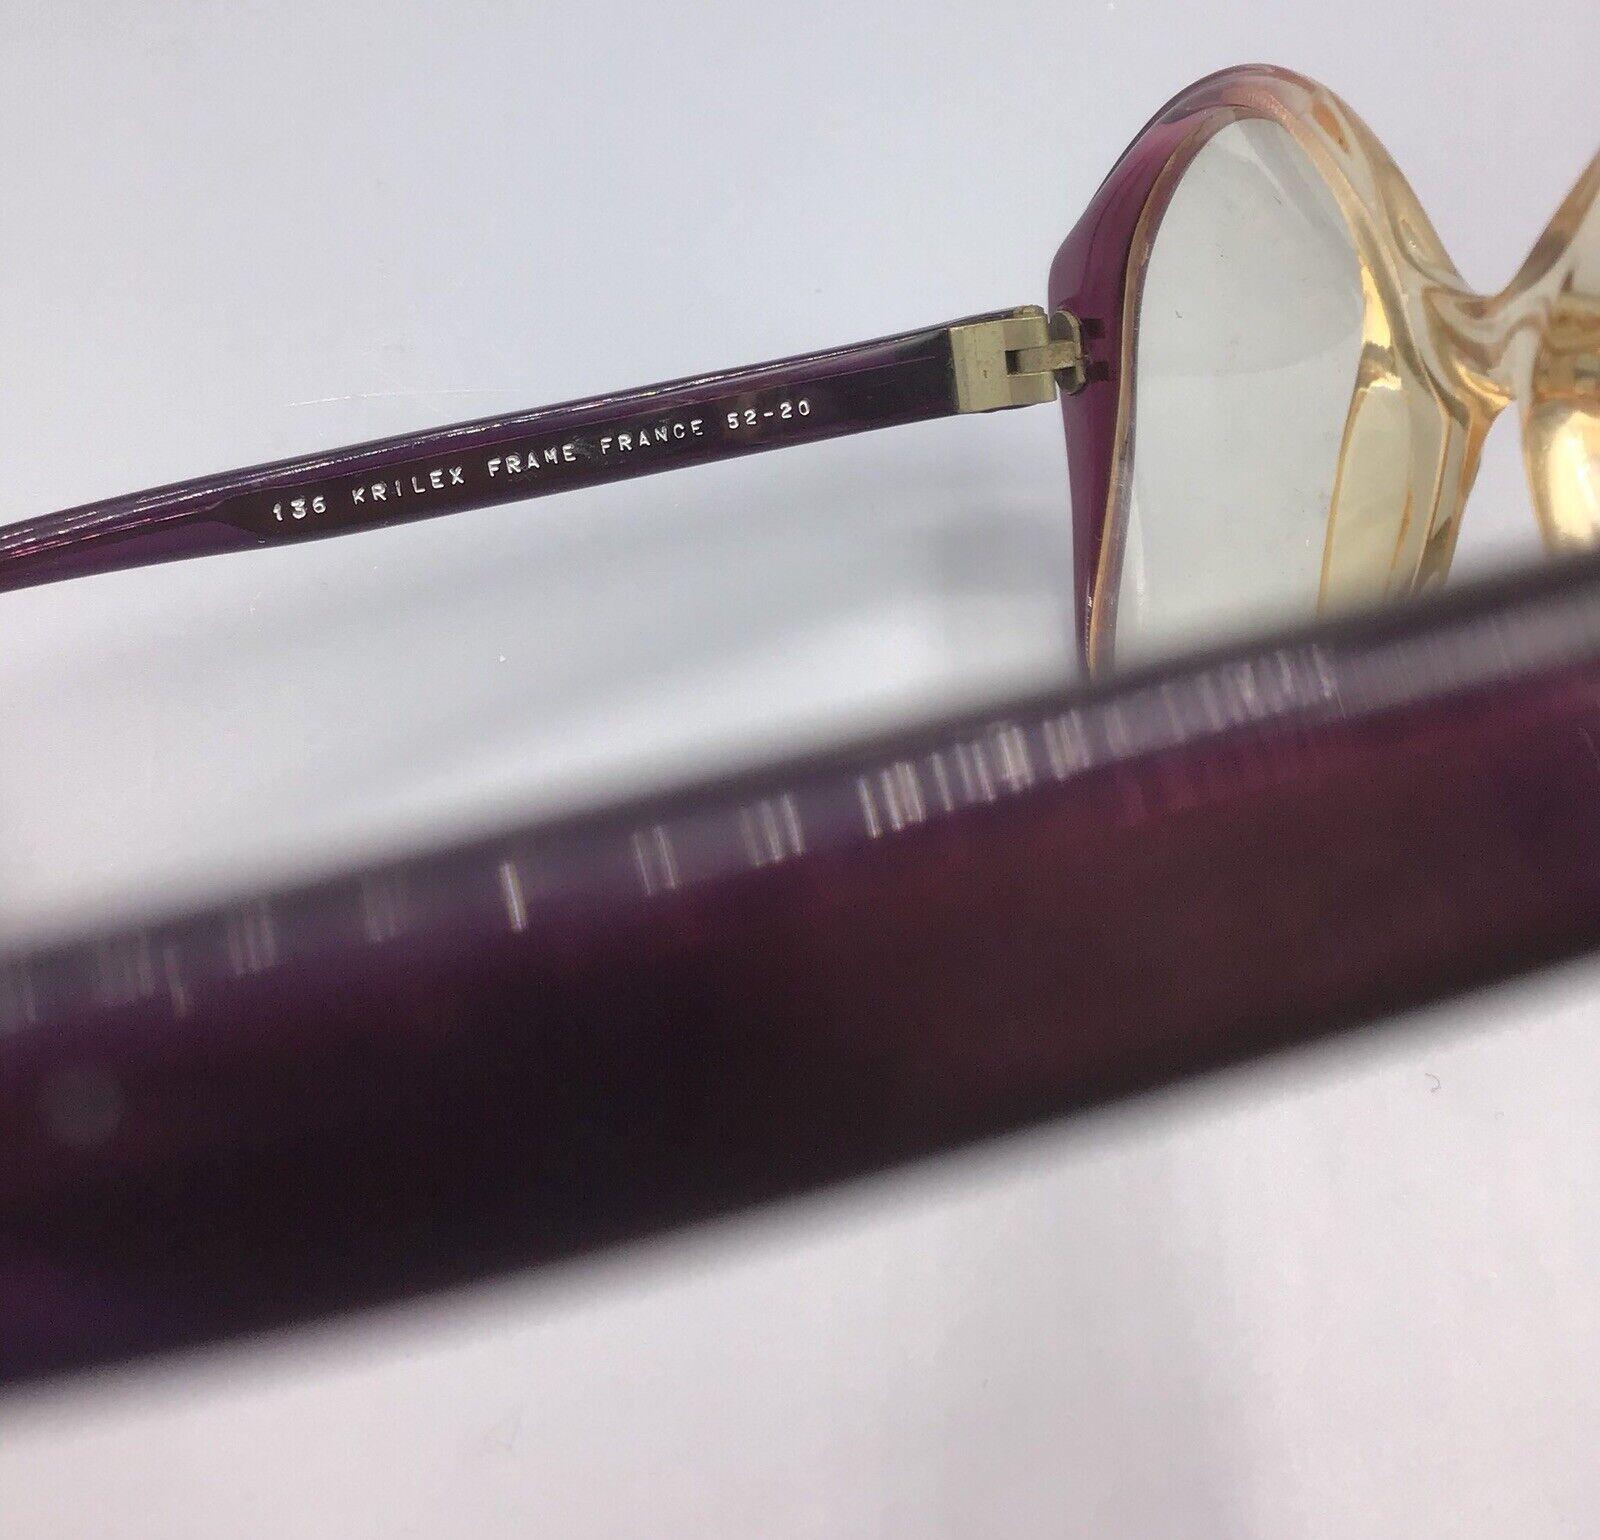 KRILEX FRAME FRANCE pierre leroc paris occhiali vintage lunettes eyewear